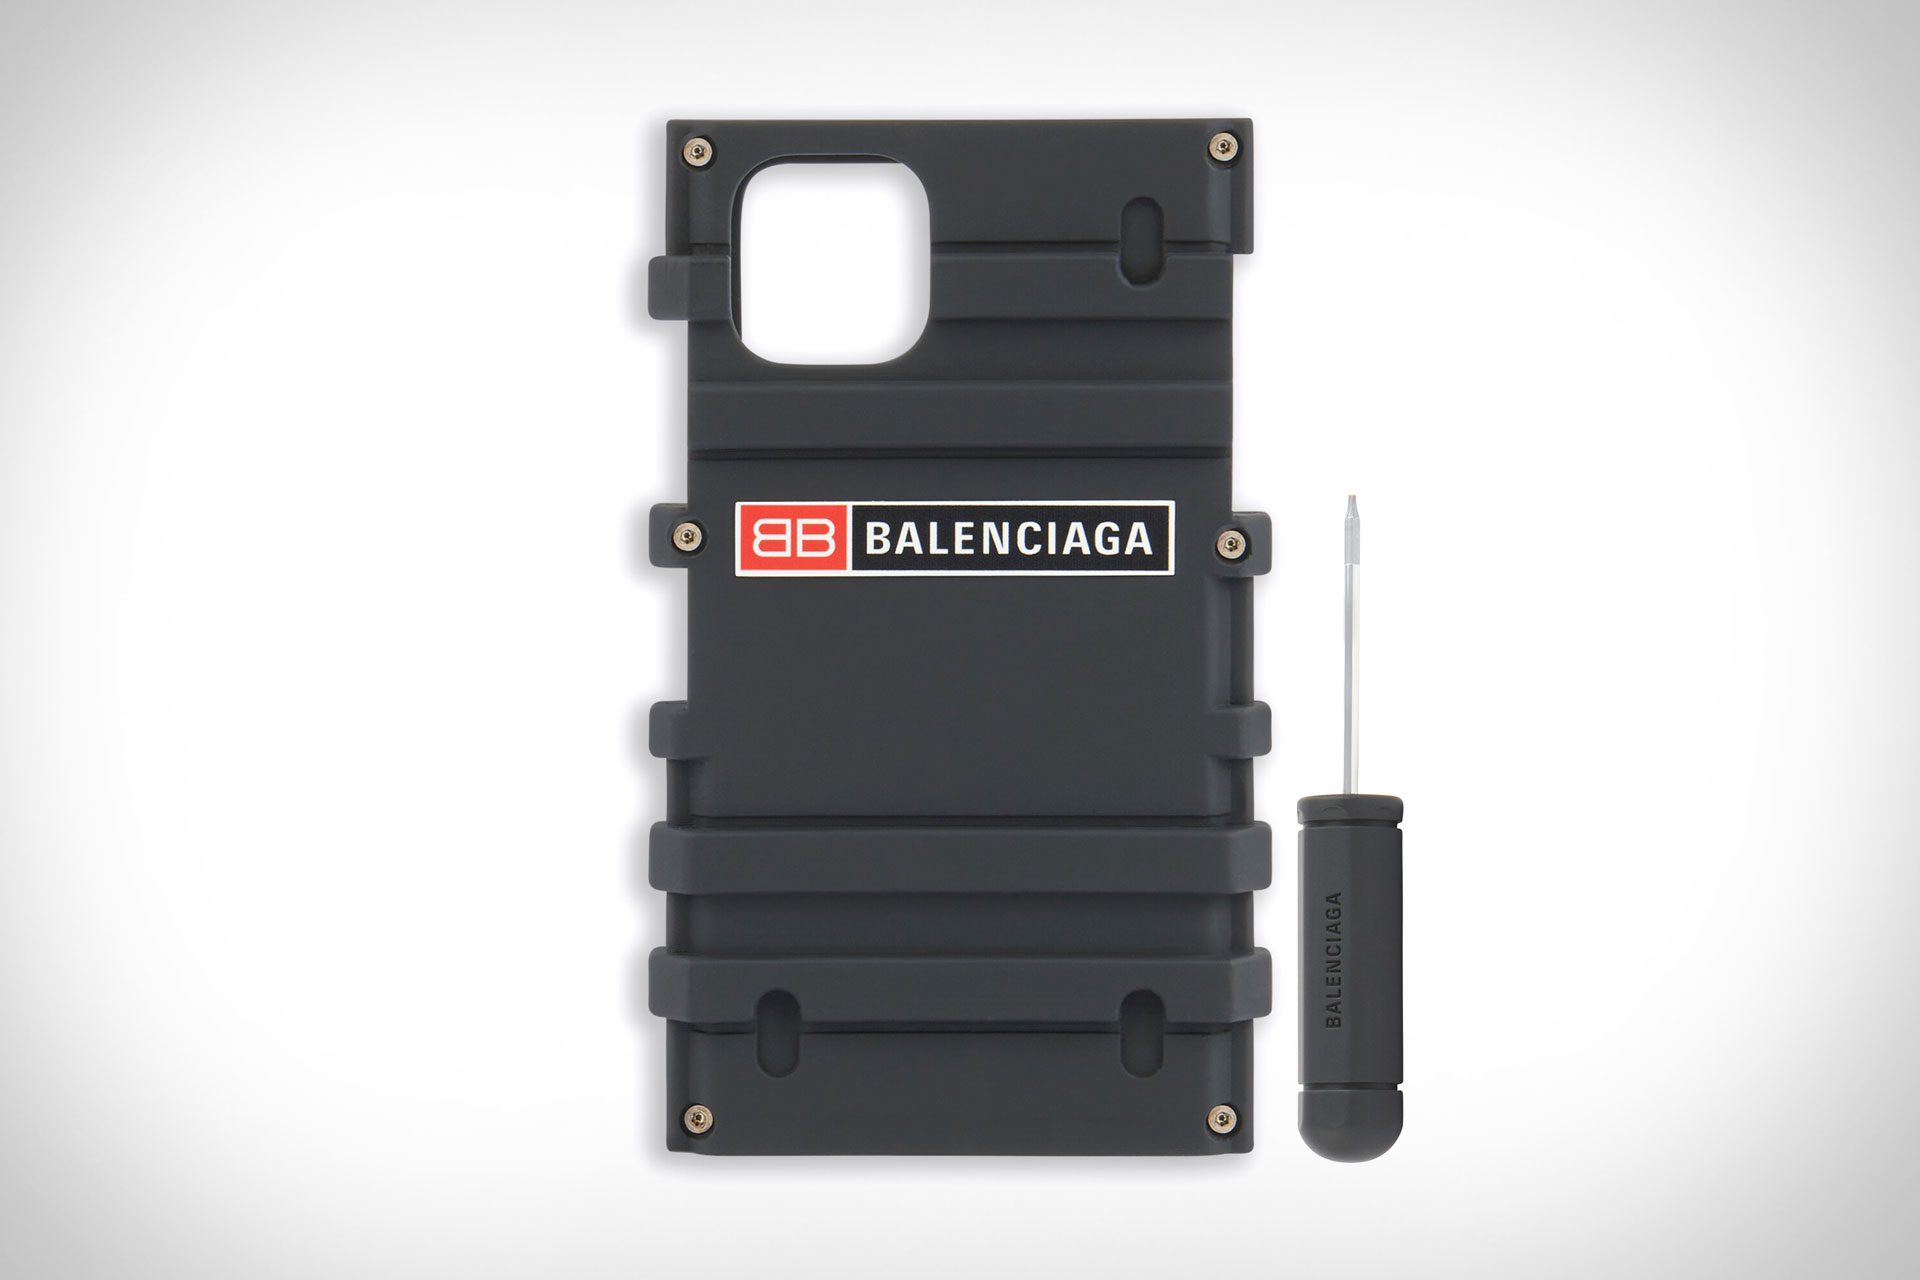 Balenciaga Grunge Style iPhone 11 Pro Max Tough Case  CaseFormula